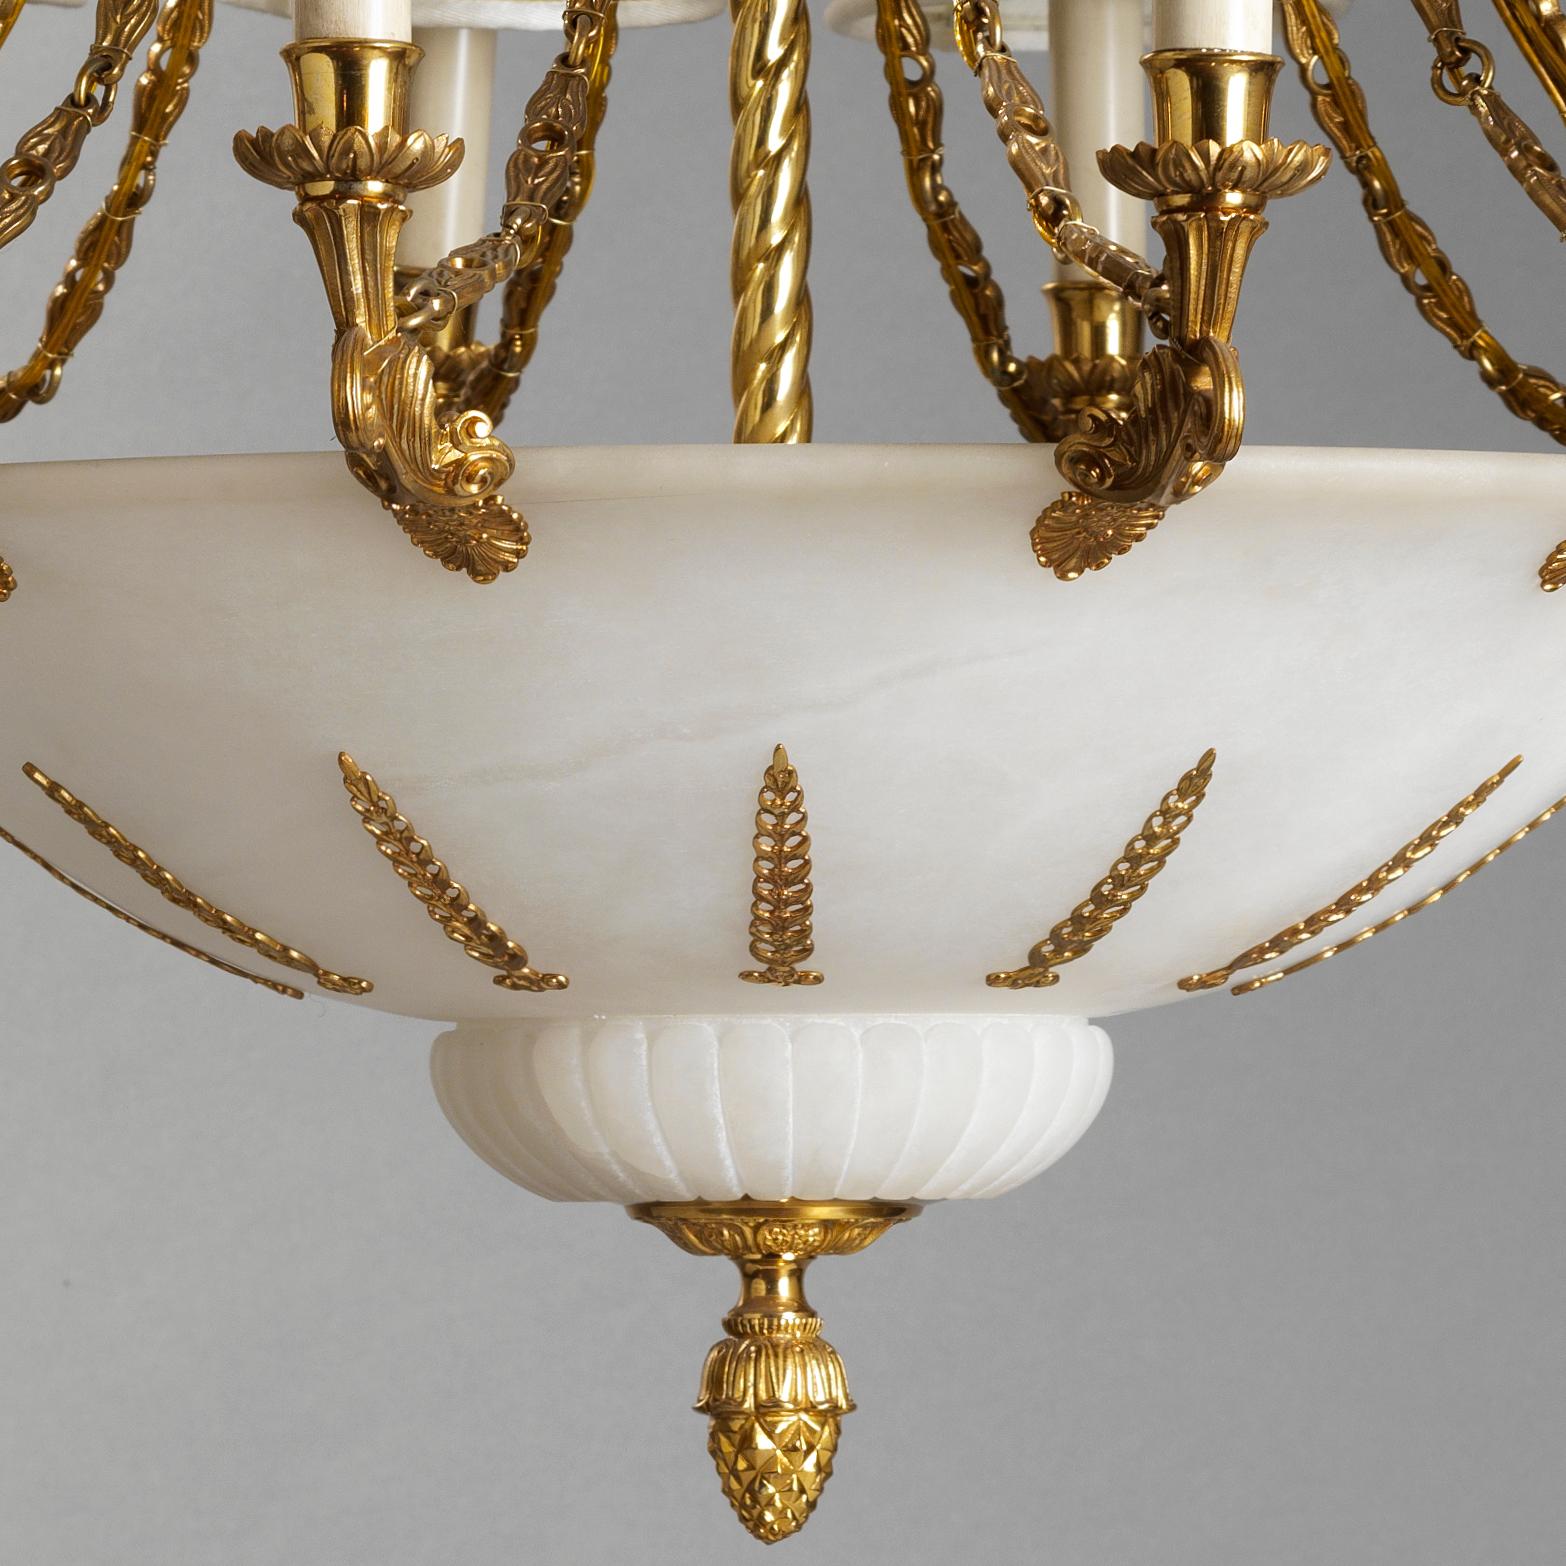 Dieser Kronleuchter im französischen Empire-Stil aus vergoldeter Bronze und Alabaster von Gherardo Degli Albizzi zeichnet sich durch hochwertige handgemeißelte Details aus.
Top Kronen in gekennzeichnet durch reiche pflanzliche Dekoration mit